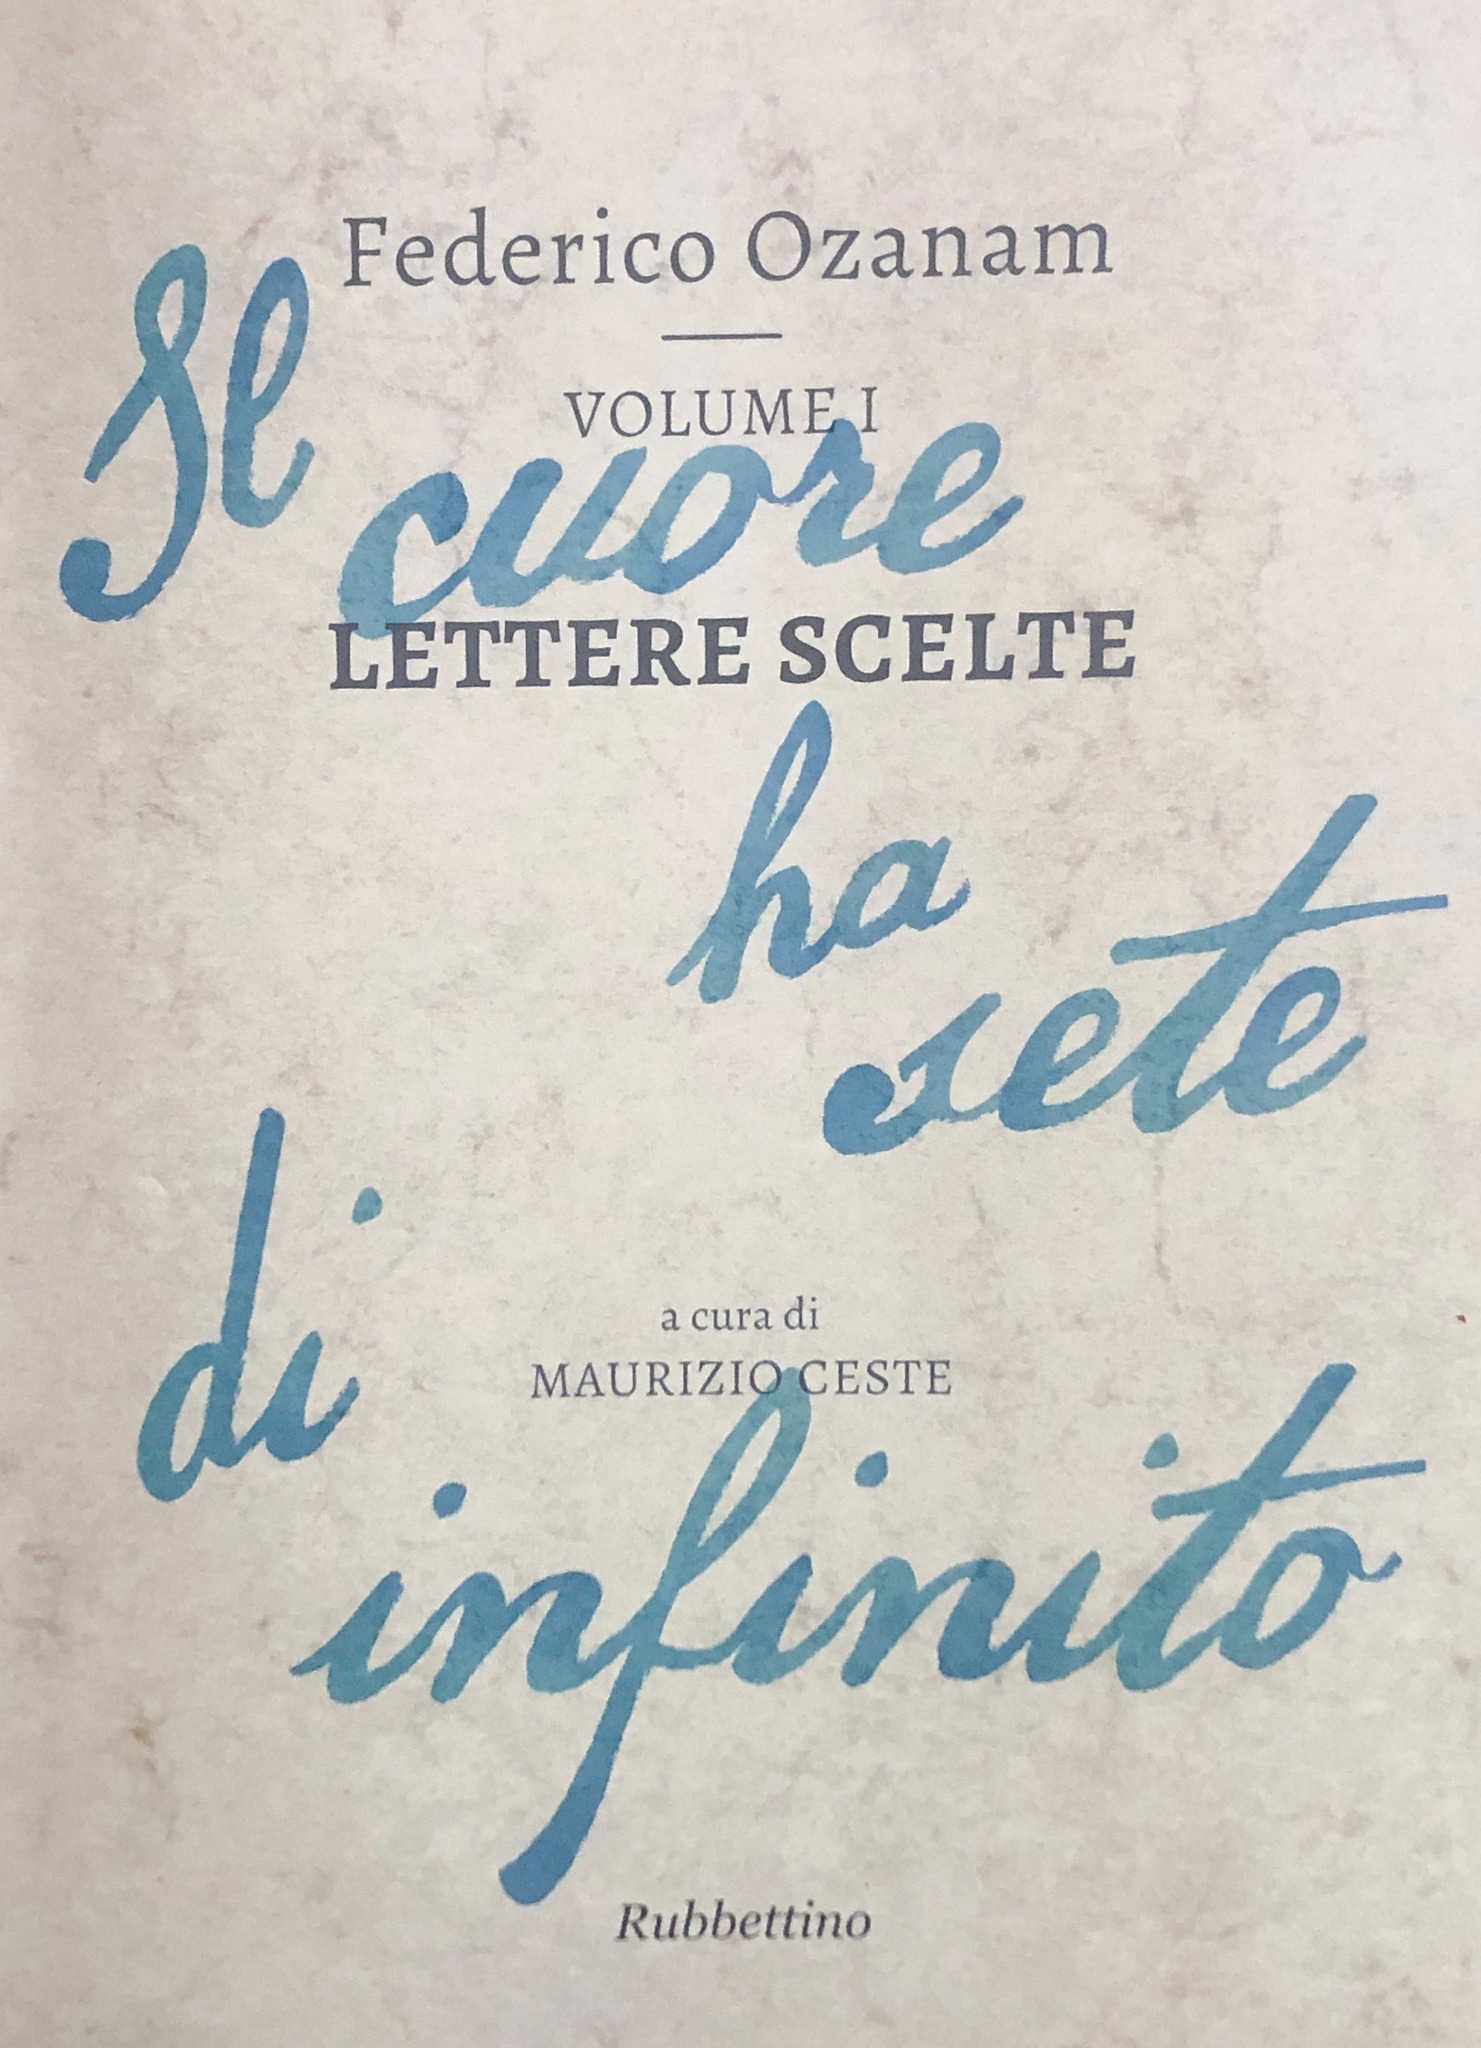 FEDERICO OZANAM – Lettere Scelte – a cura di M. Ceste Vol. 1 Edizioni Rubettino